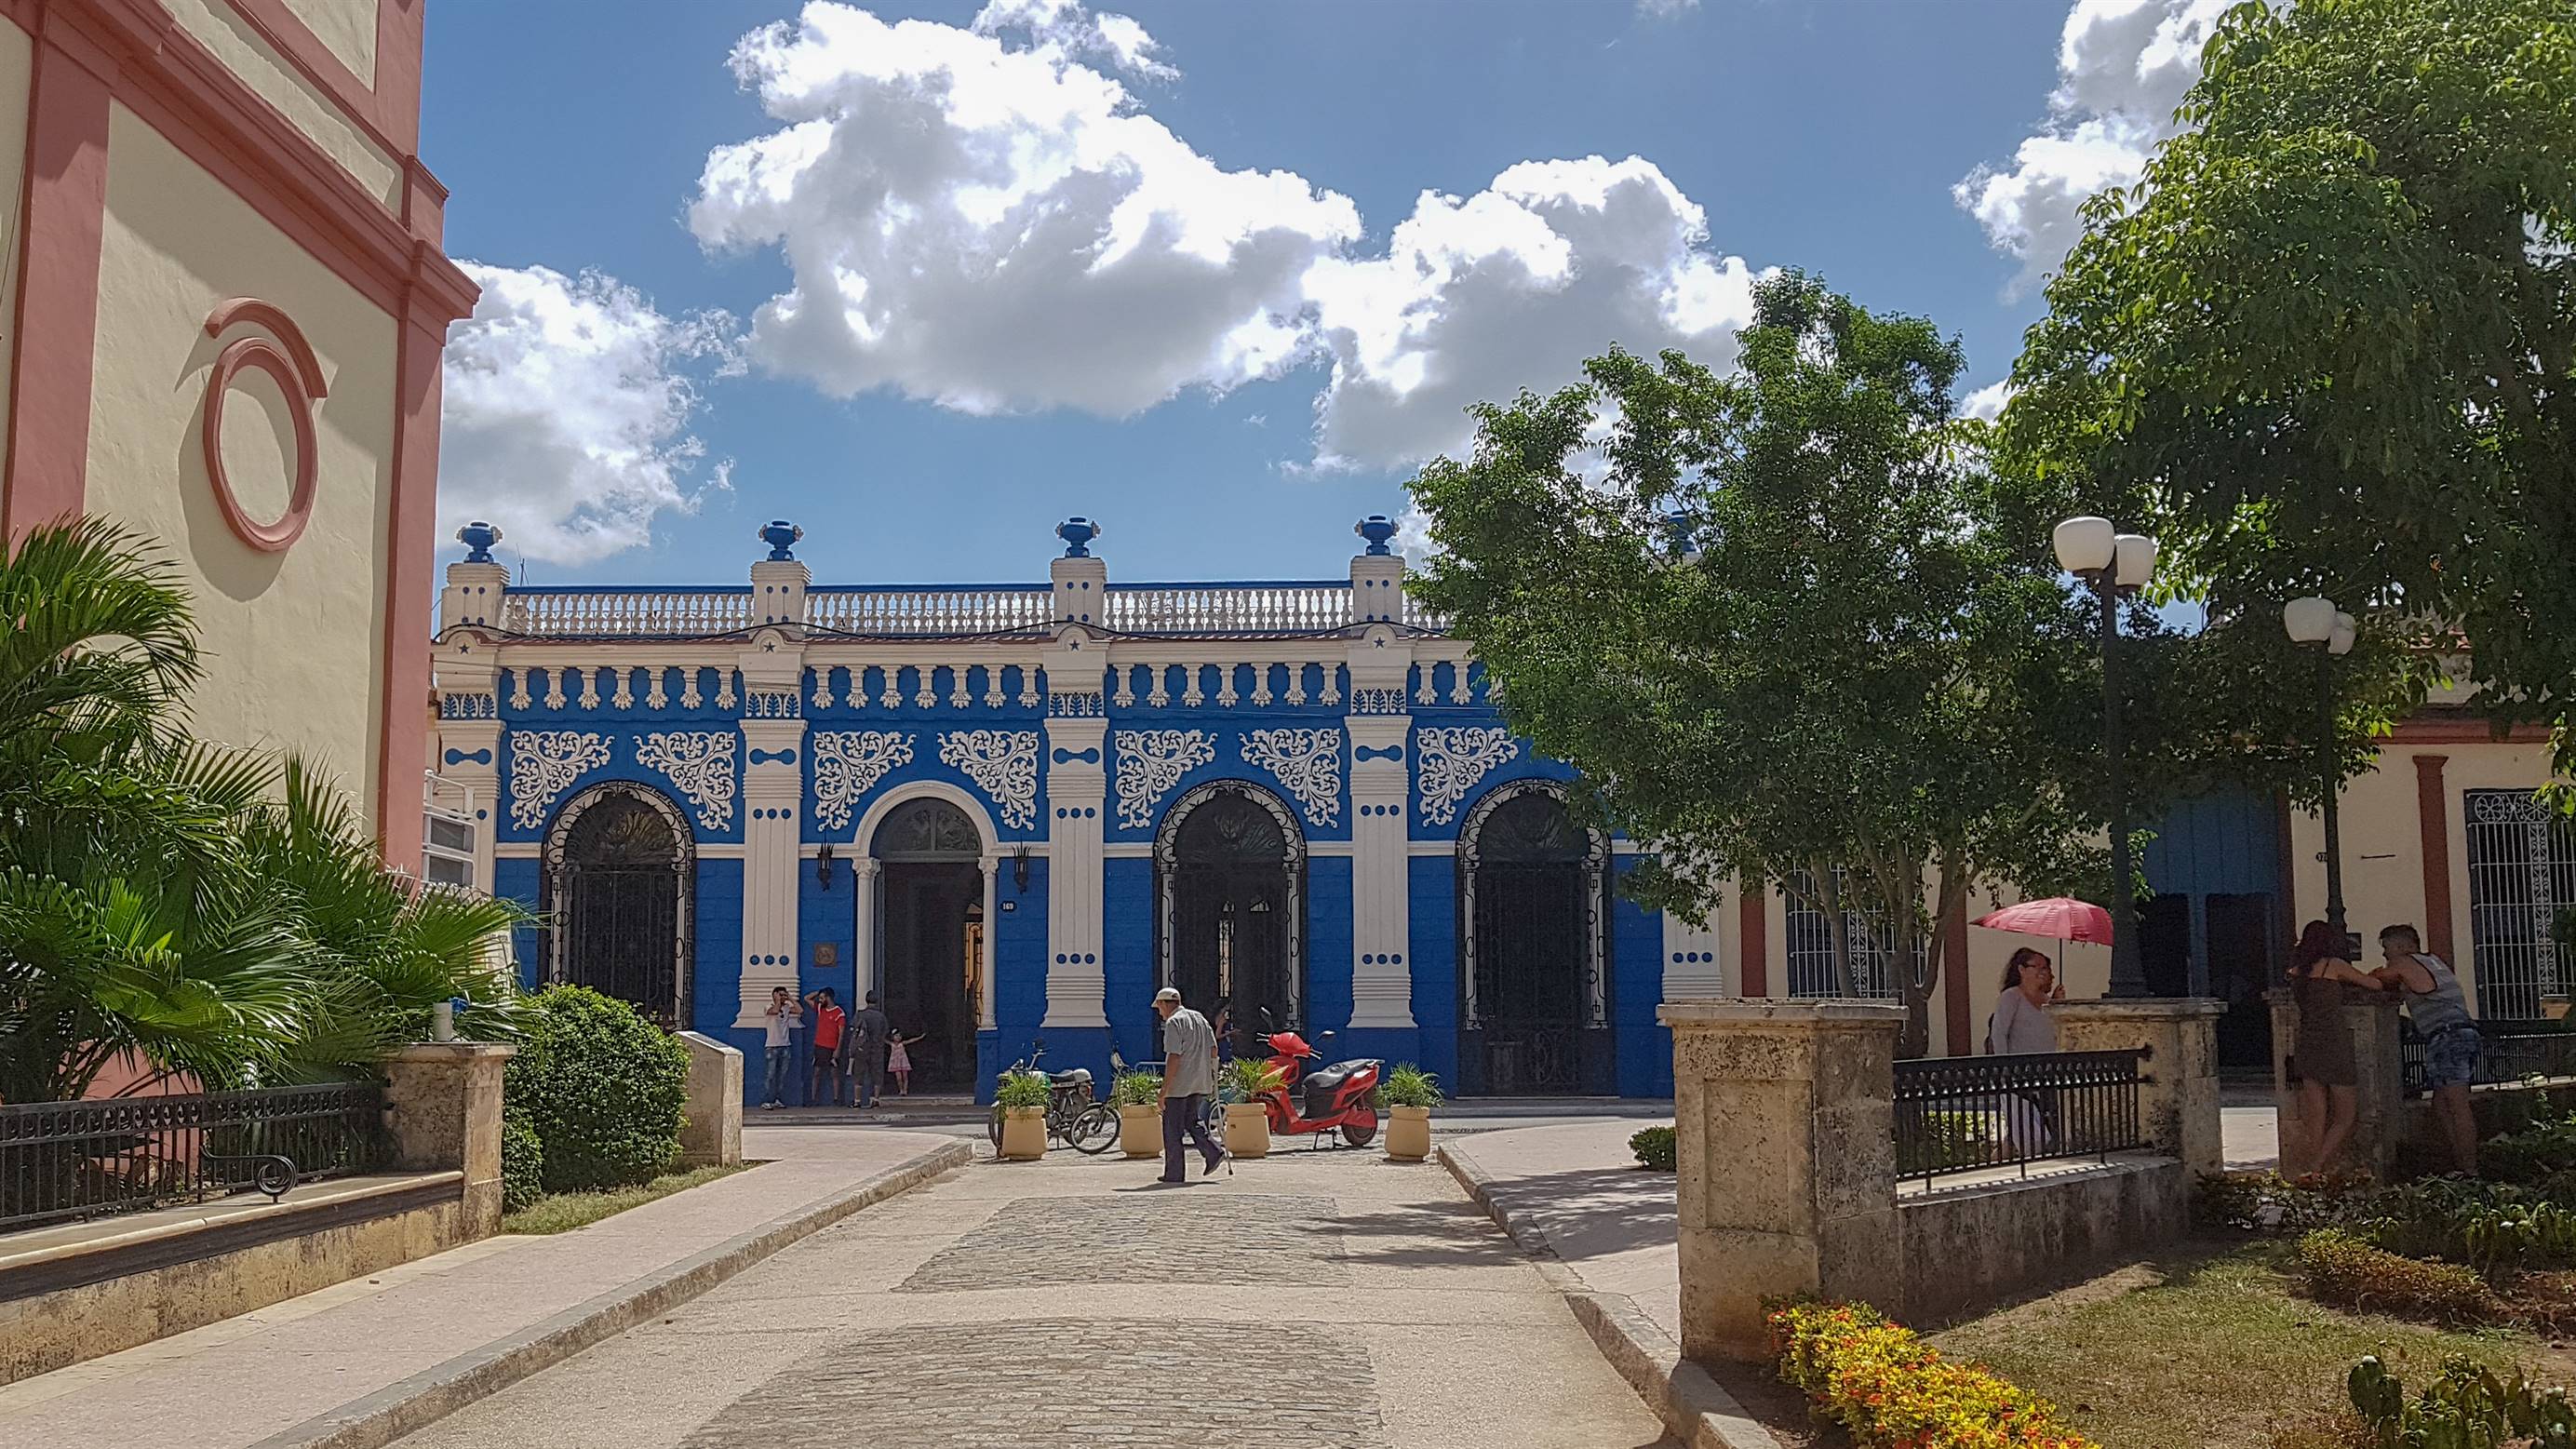 Casa de la diversidad Camaguey Cuba